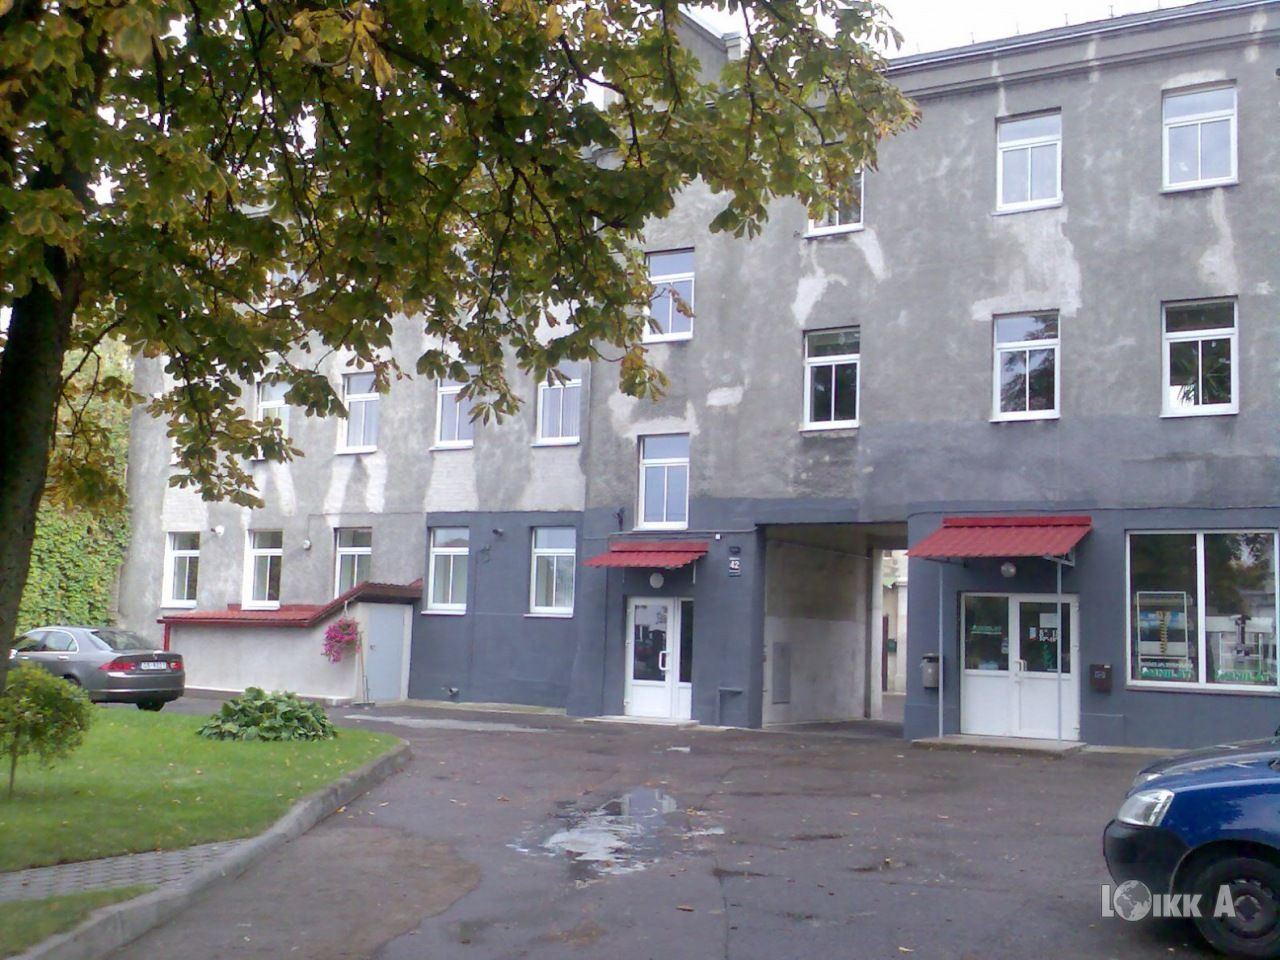 Квартира в Риге, Латвия, 31 м2 - фото 1